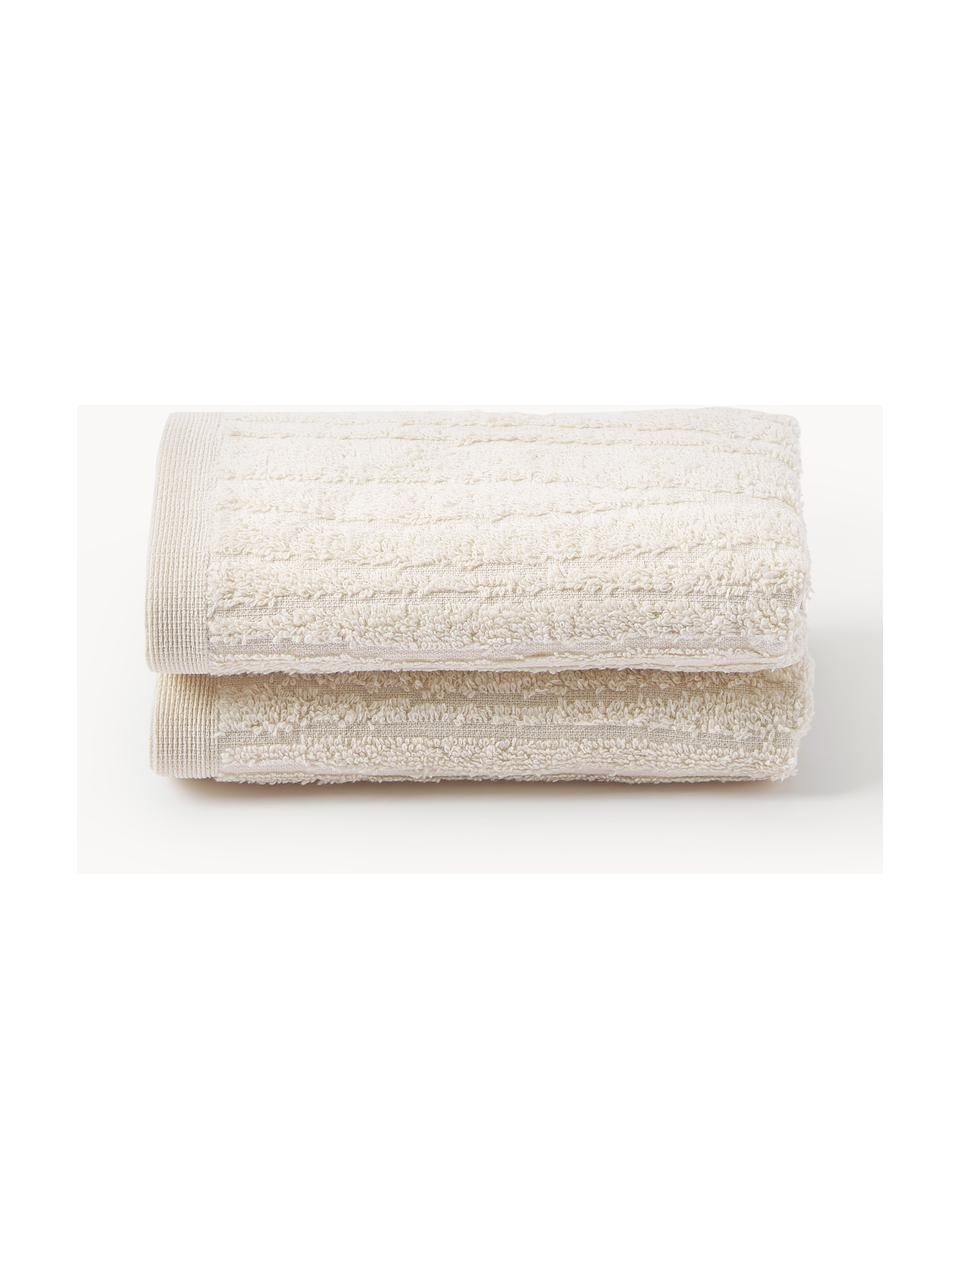 Baumwoll-Handtuch Audrina in verschiedenen Größen, Hellbeige, Handtuch, B 50 x L 100 cm, 2 Stück